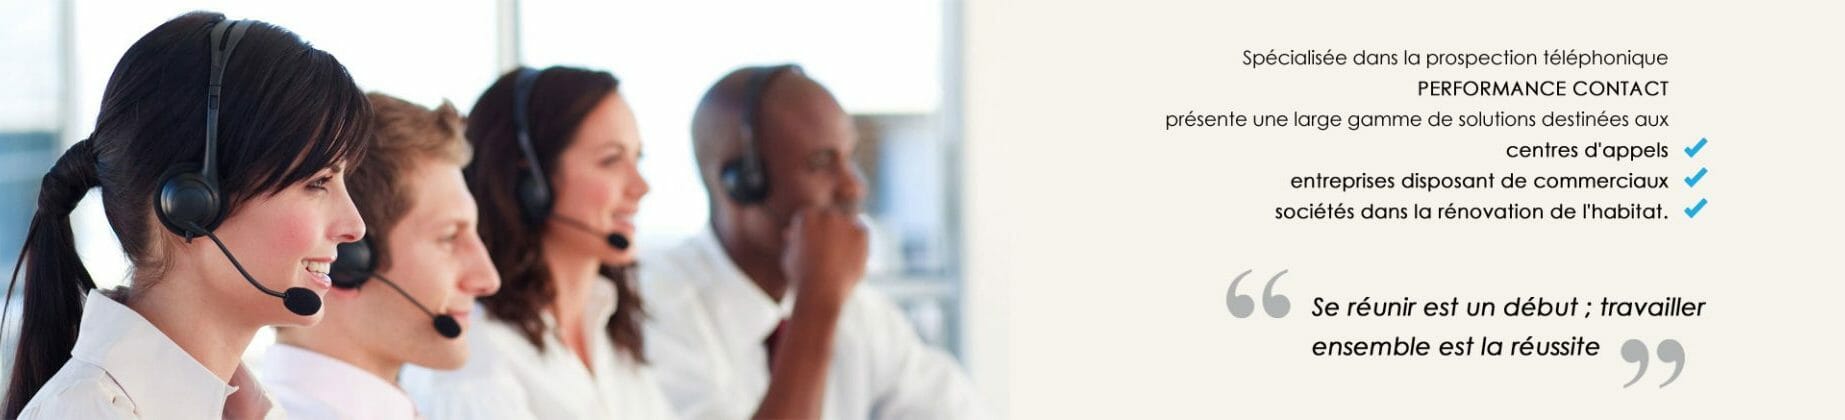 Prospection, phoning, solutions pour centres d'appel